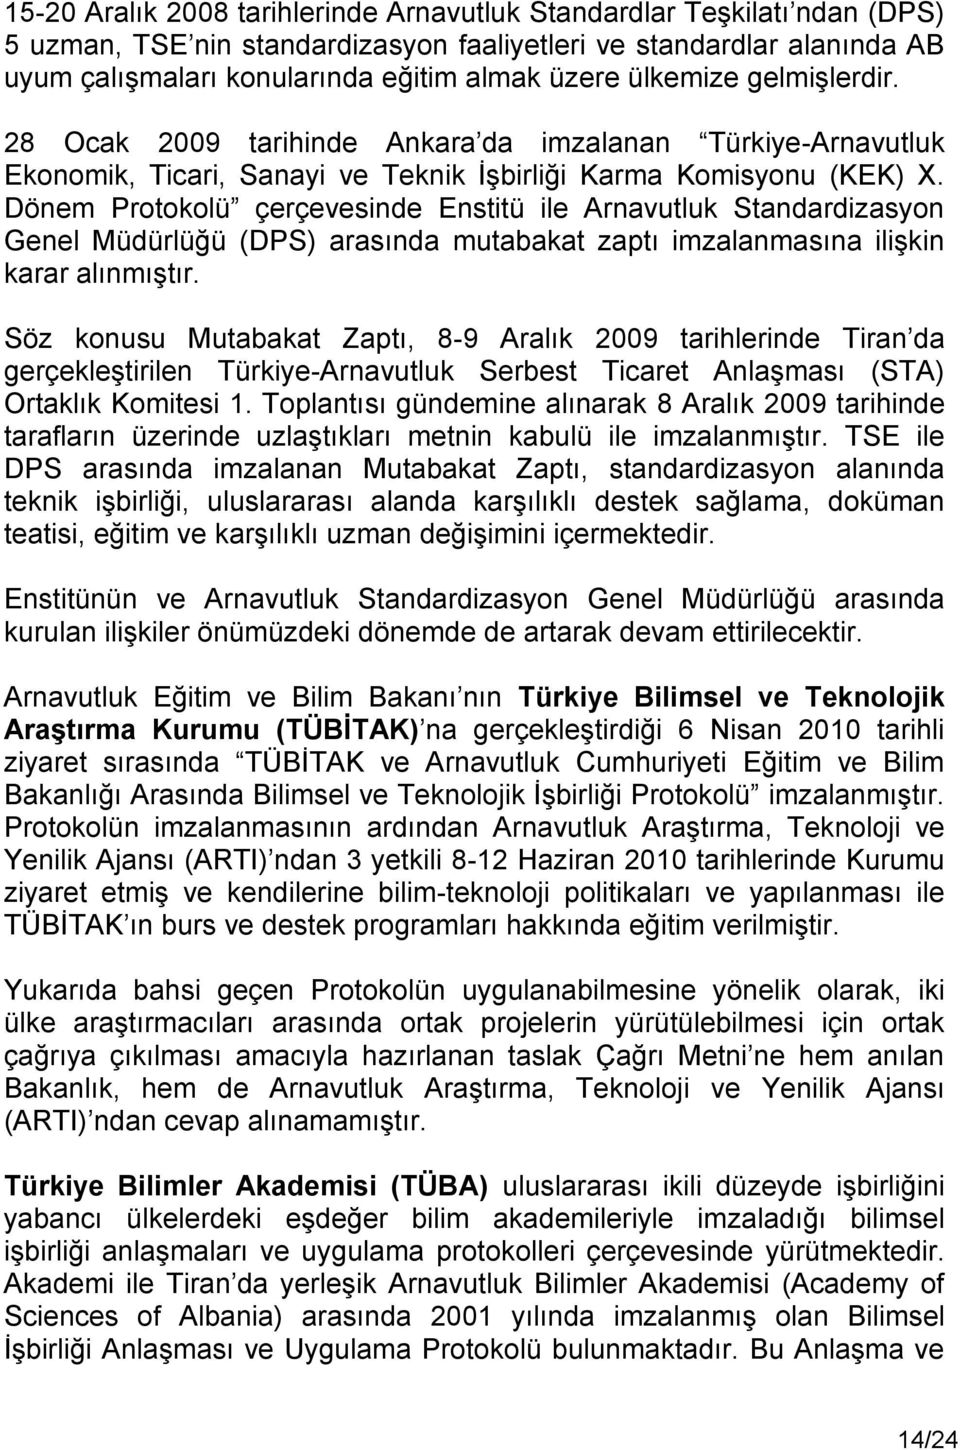 Dönem Protokolü çerçevesinde Enstitü ile Arnavutluk Standardizasyon Genel Müdürlüğü (DPS) arasında mutabakat zaptı imzalanmasına ilişkin karar alınmıştır.